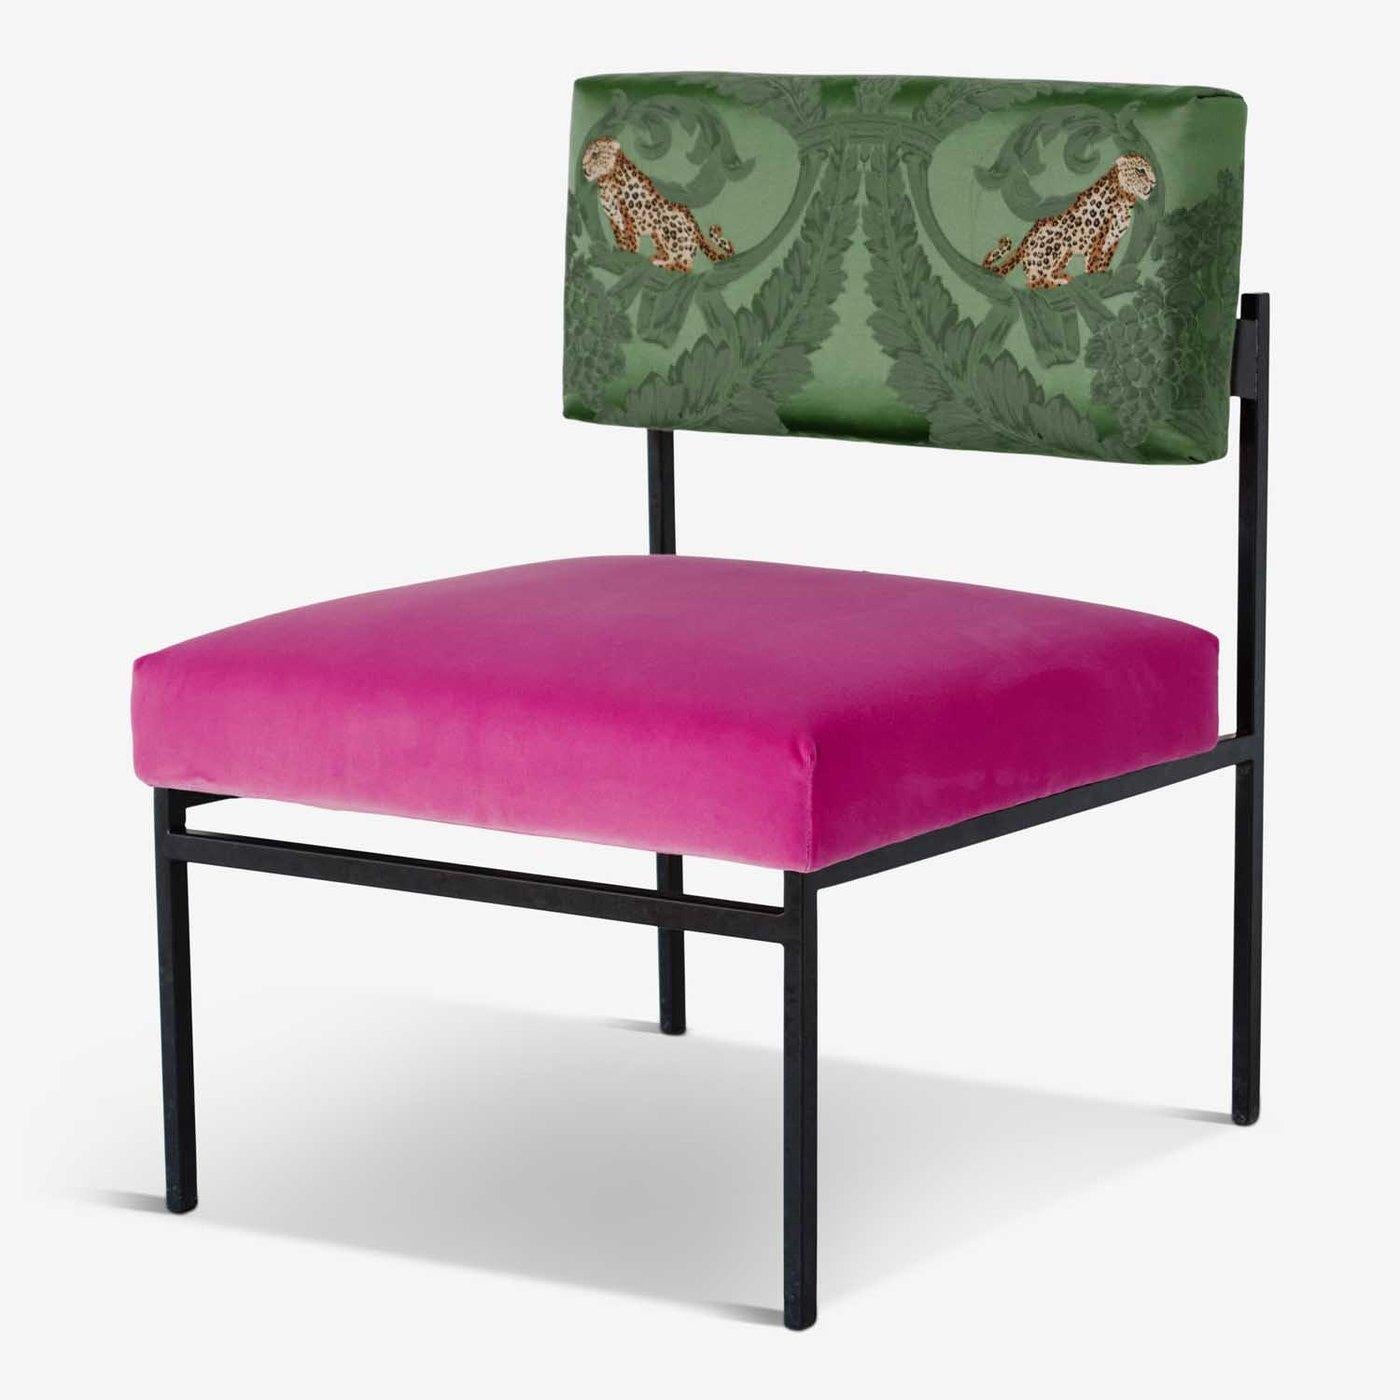 Le fauteuil Aurea Pink Velvet & Jungle Silk, de CtrlZak et Davide Barzaghi, est conçu avec des lignes audacieuses et une apparence ultra chic. Avec son charme rétro des années 50, cet article très prisé des restaurants et des hôtels est le nec plus